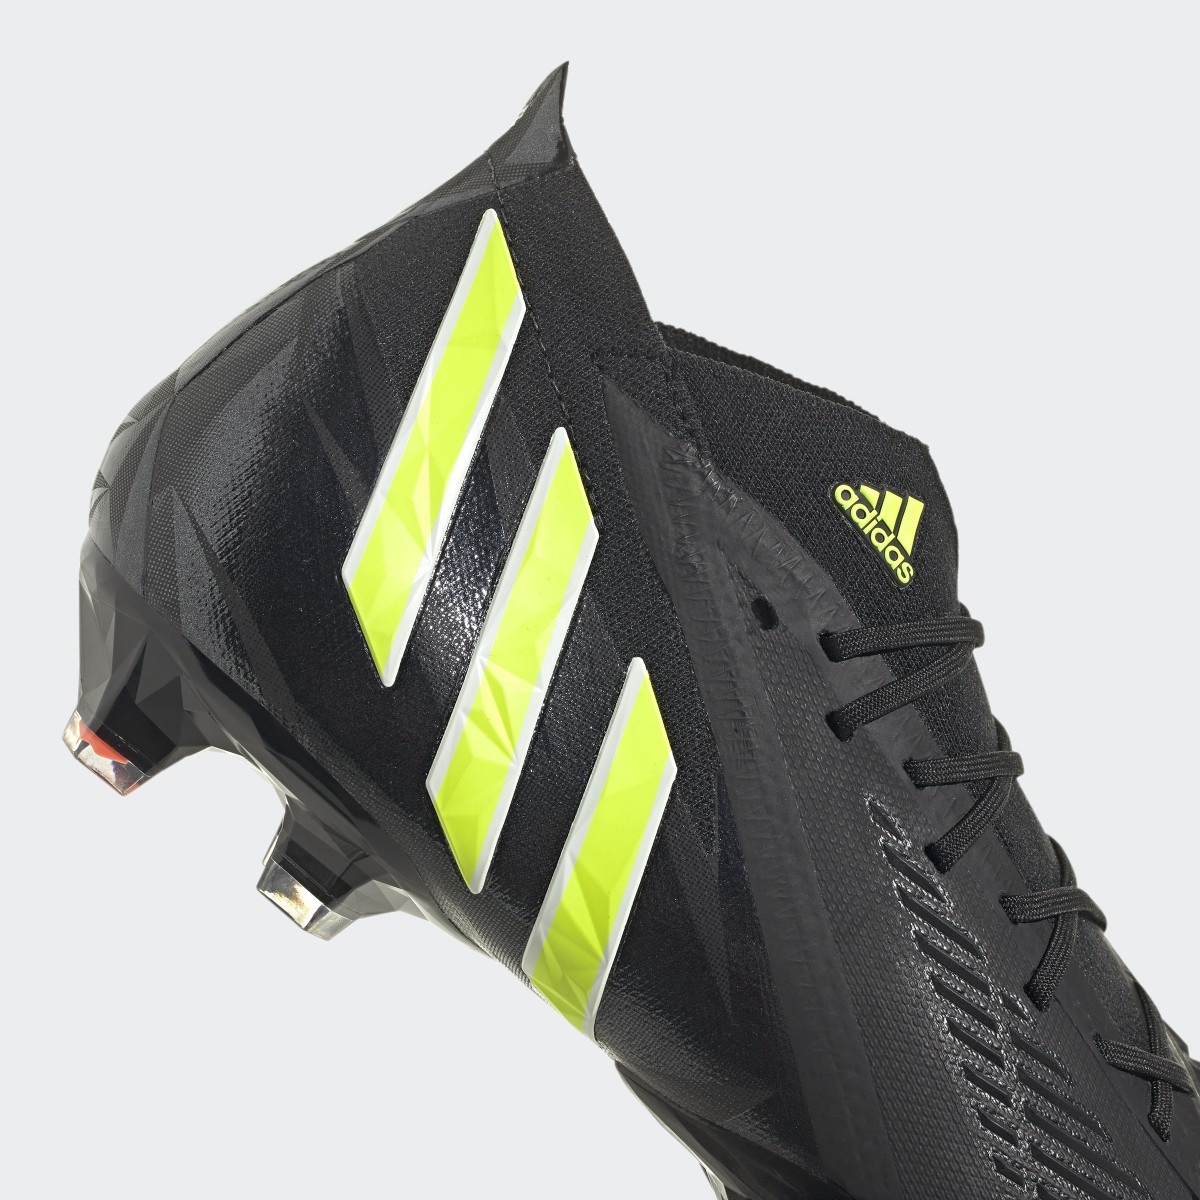 Adidas Botas de Futebol Predator Edge.1 – Piso firme. 9